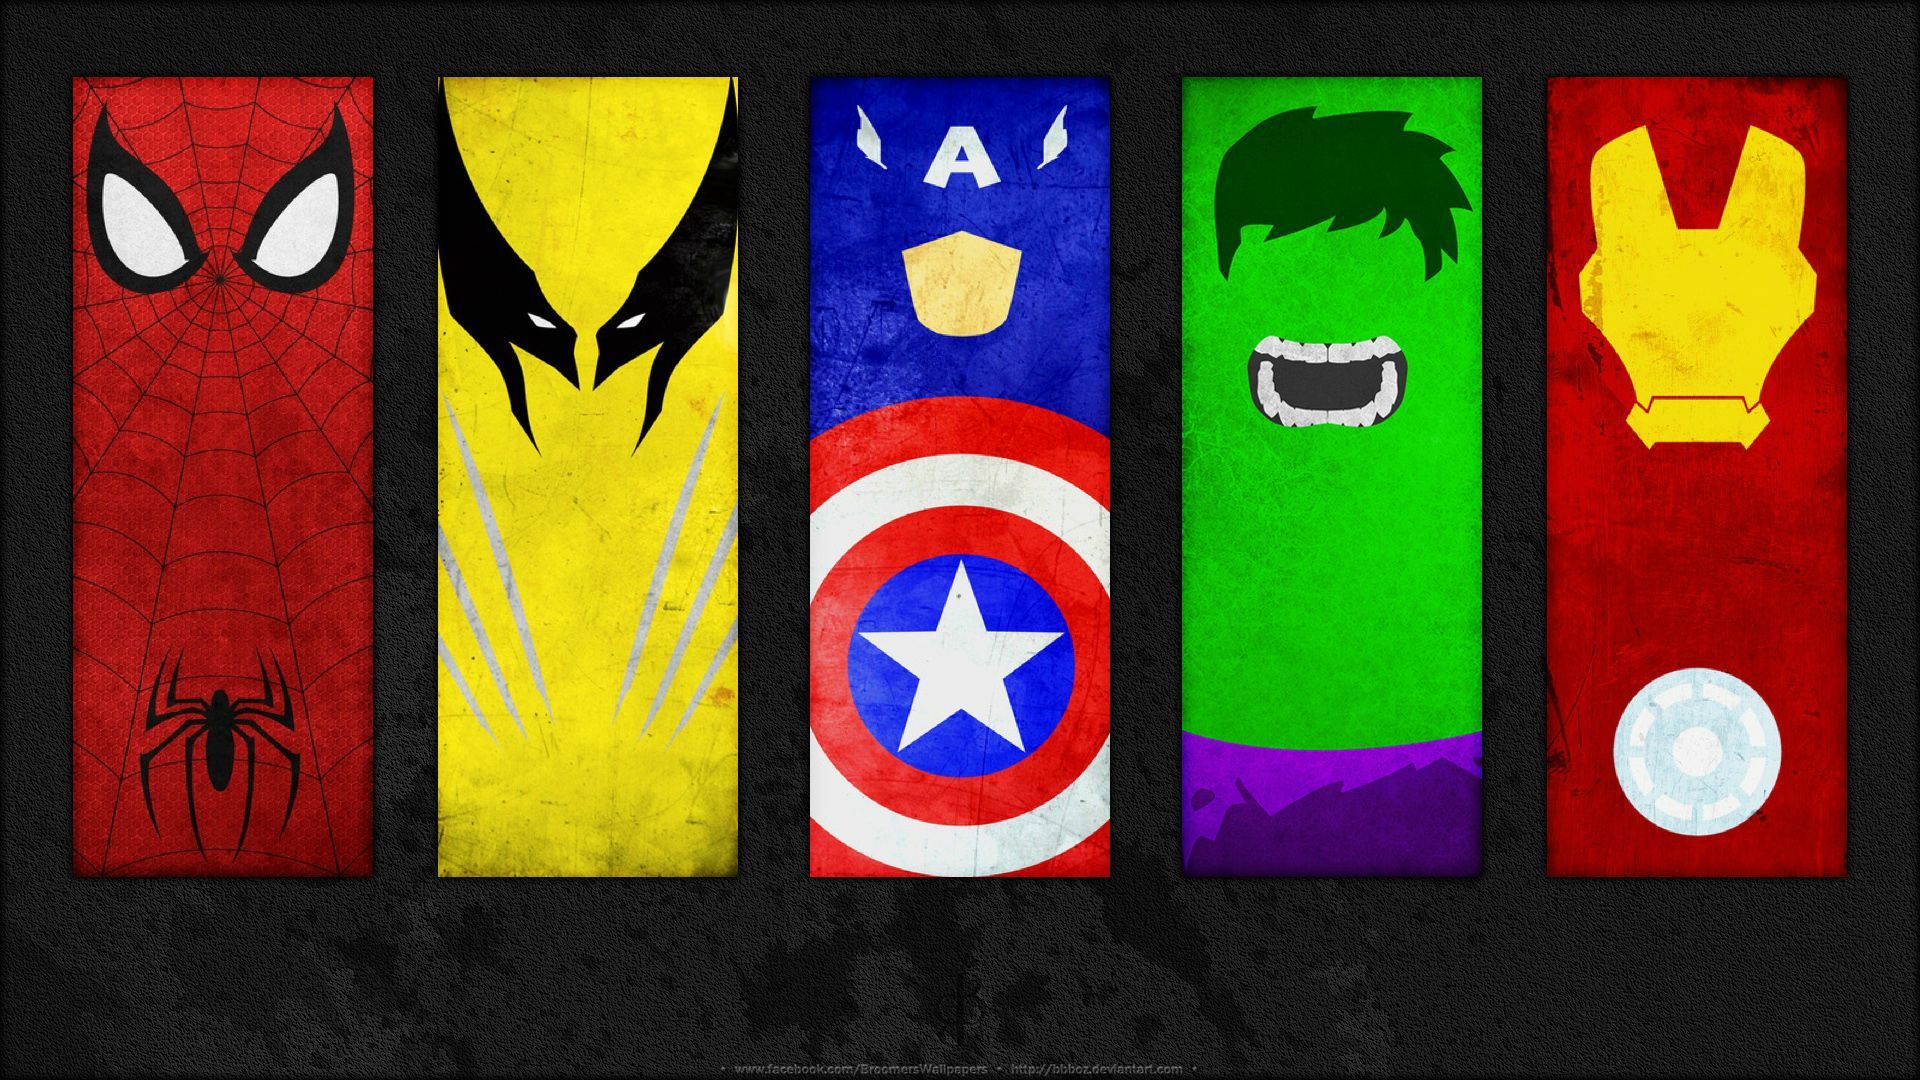 fond d'écran de super herois,personnage fictif,drapeau,super héros,art,illustration